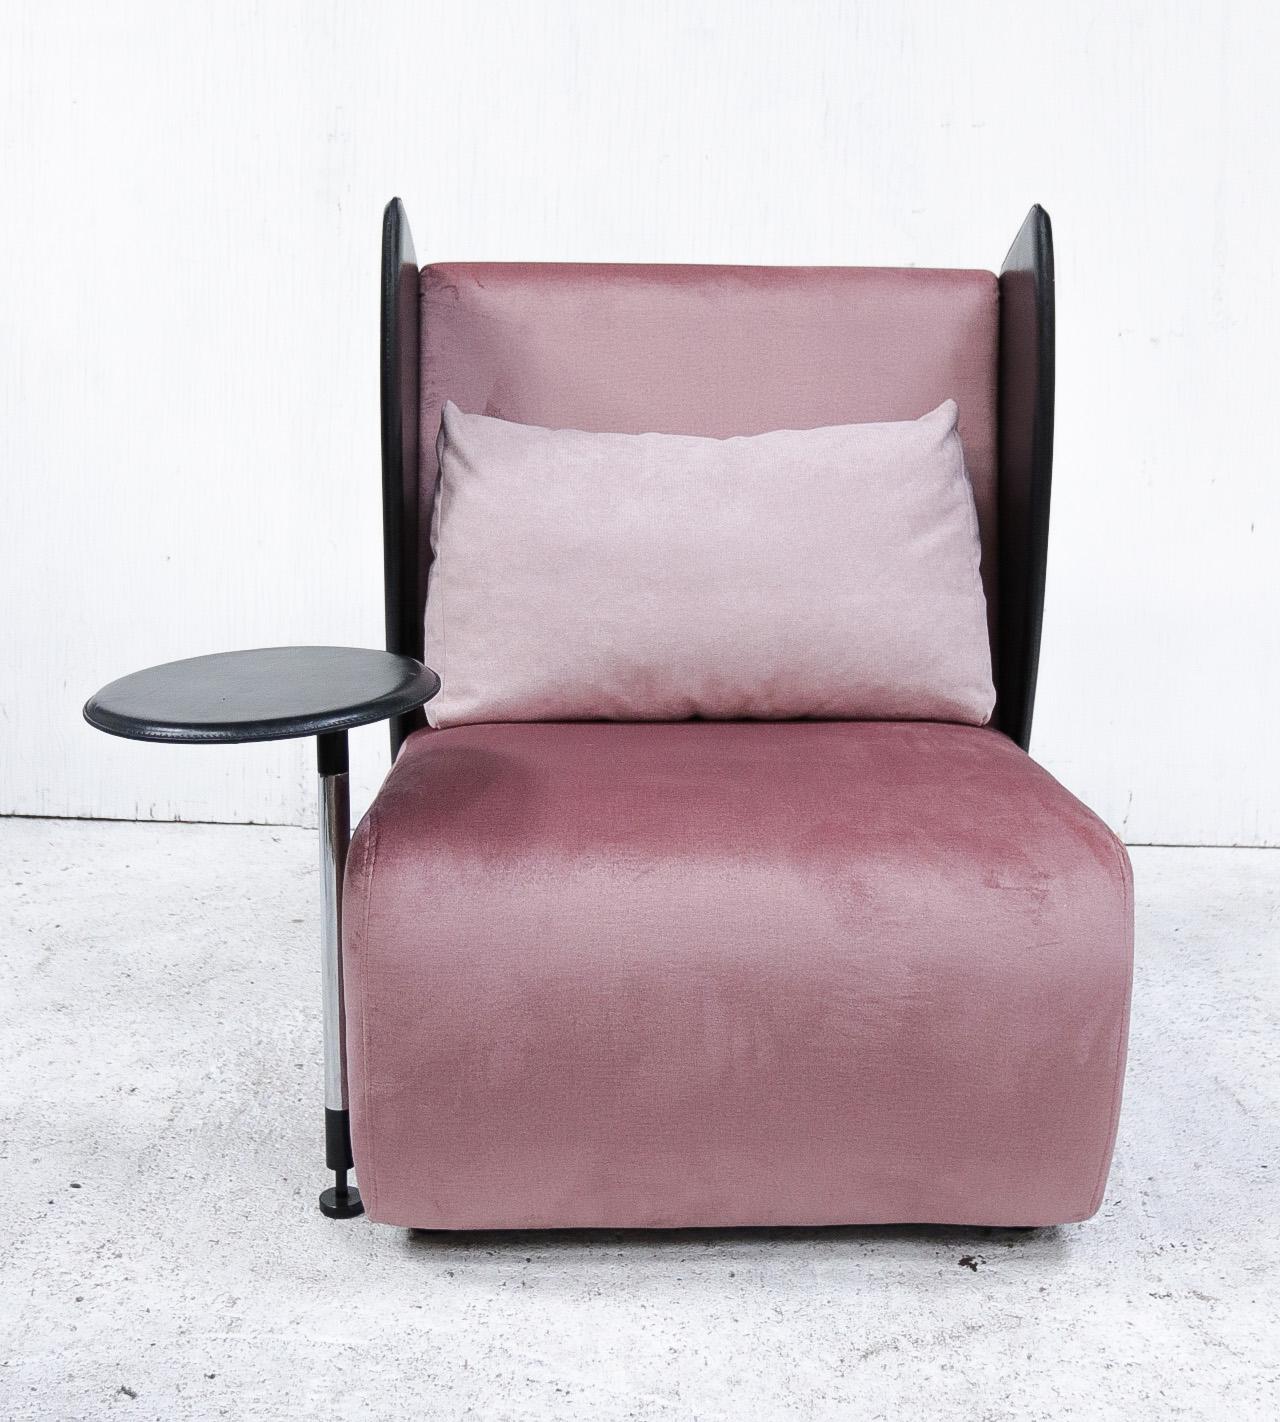 Seltener postmoderner Stuhl im Memphis-Stil, entworfen von Augusto Mandelli und Walter Selva für Salmistraro, Italien in den 1980er Jahren.
Die schwarzen Teile sind aus Leder gefertigt.
Neue alte rosa Samtpolsterung.
 